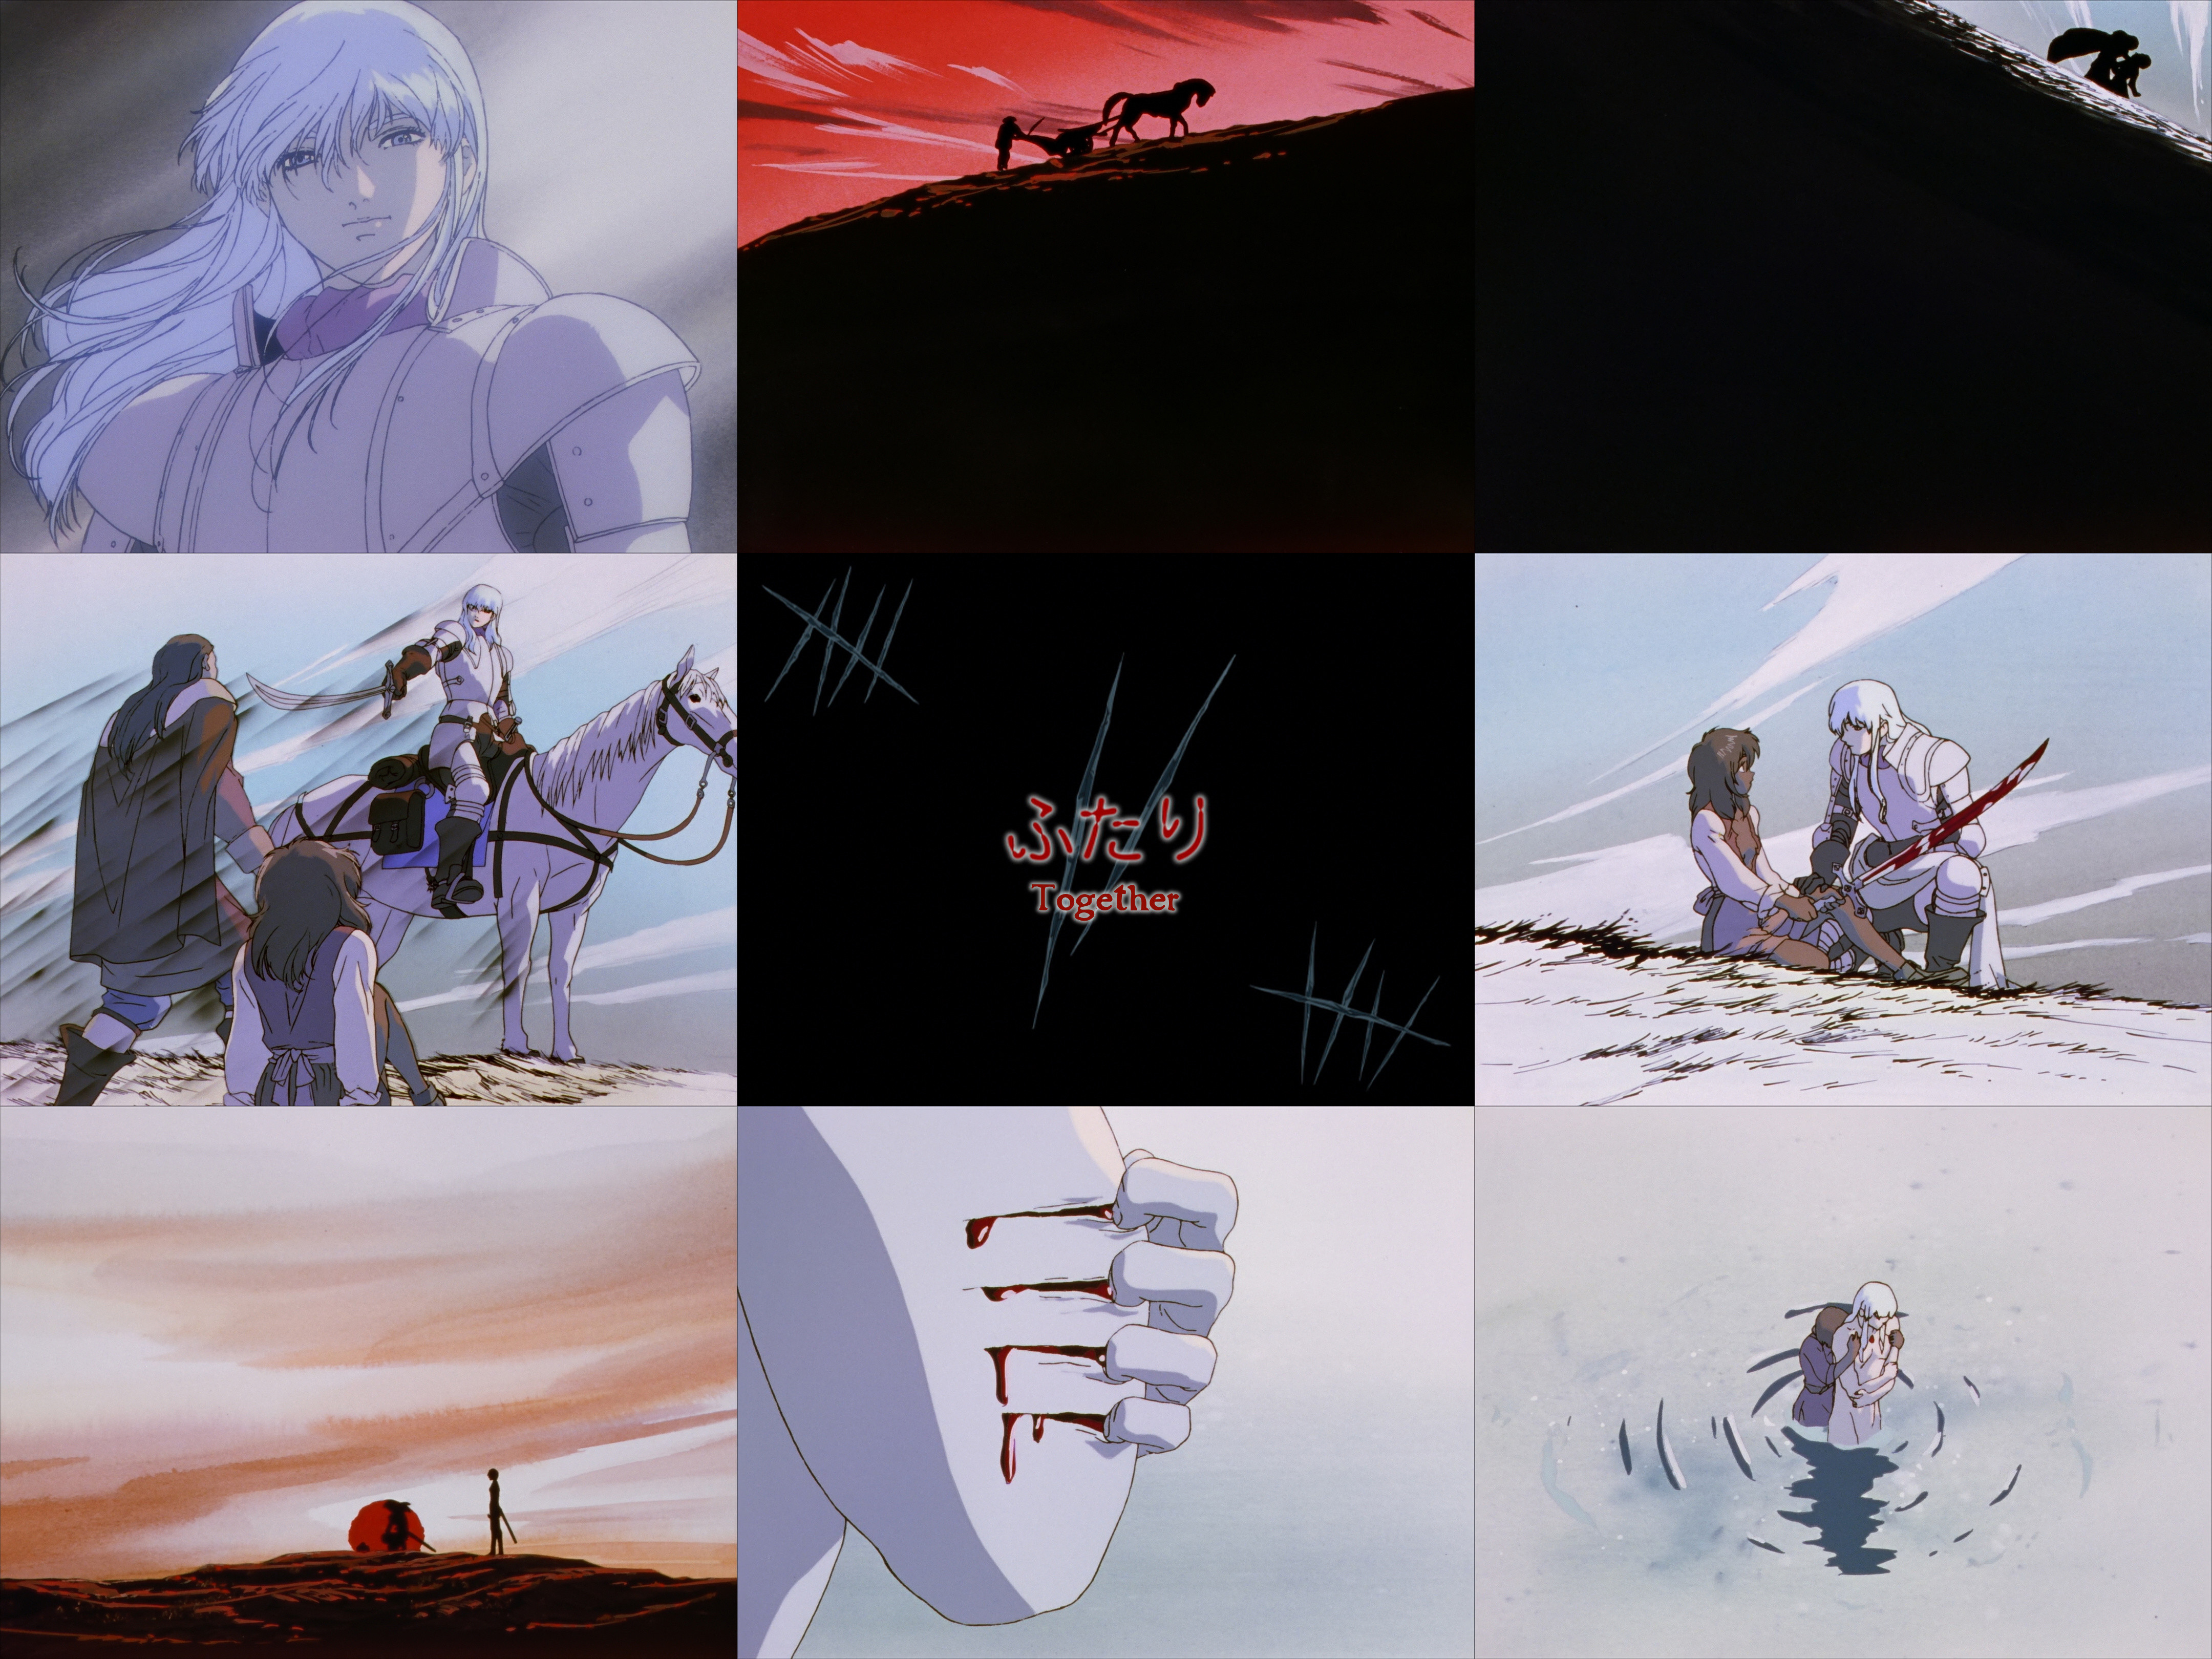 Berserk (1997) Rewatch - Episode 12 : r/anime